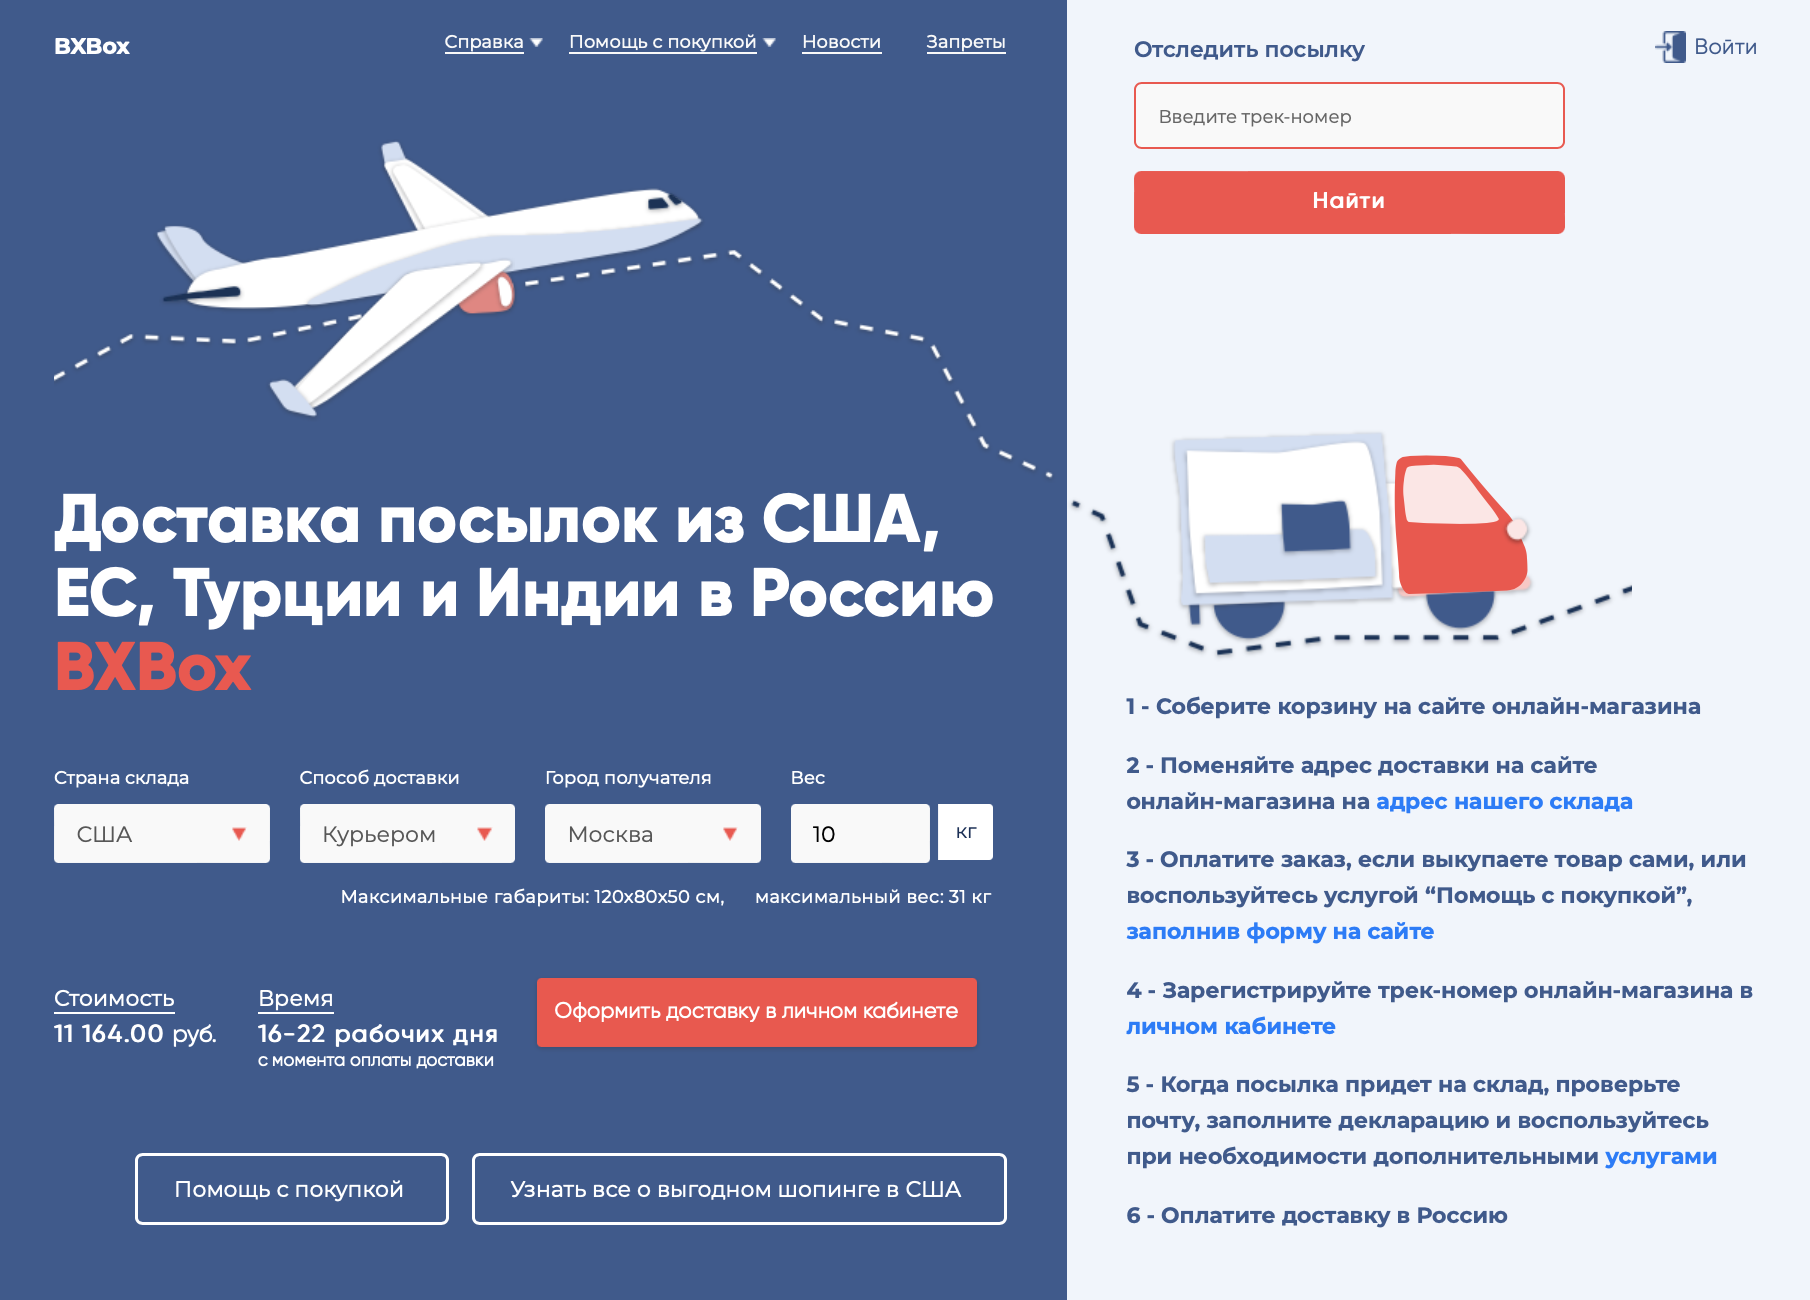 Еще до регистрации на сайте можно рассчитать примерную стоимость доставки. Источник: bxbox.boxberry.ru